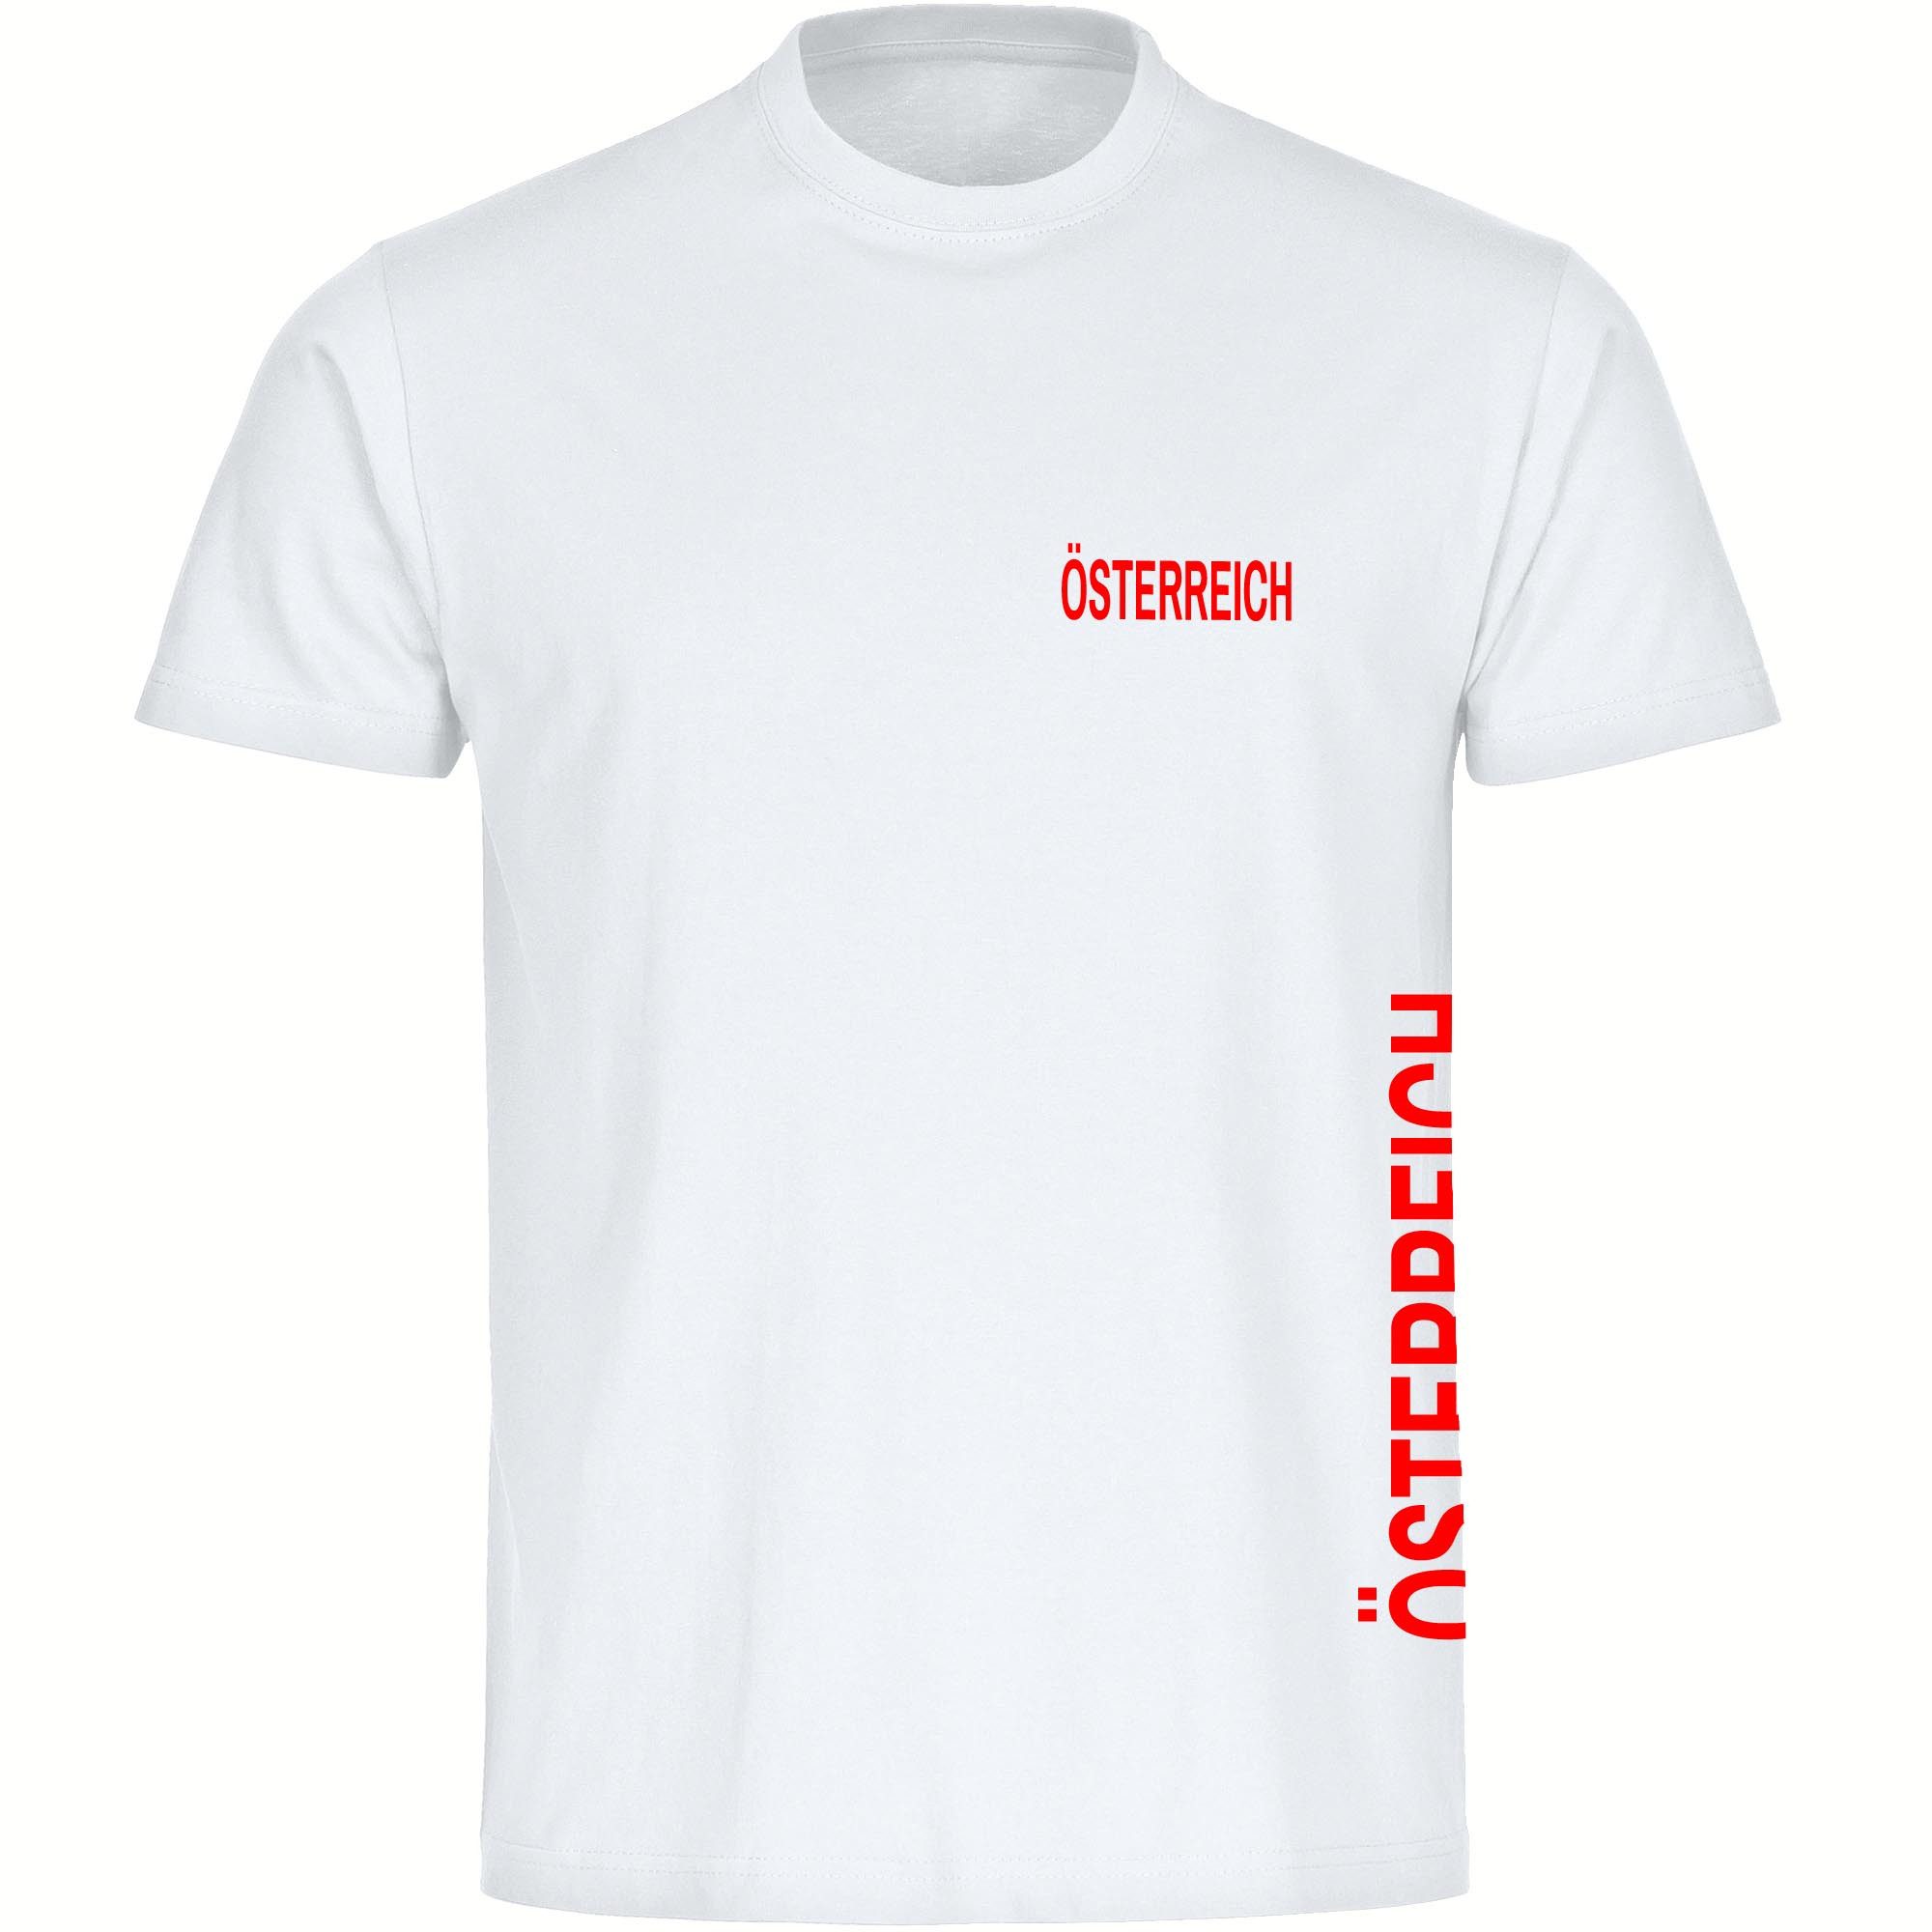 multifanshop T-Shirt Herren Österreich - Brust & Seite - Männer